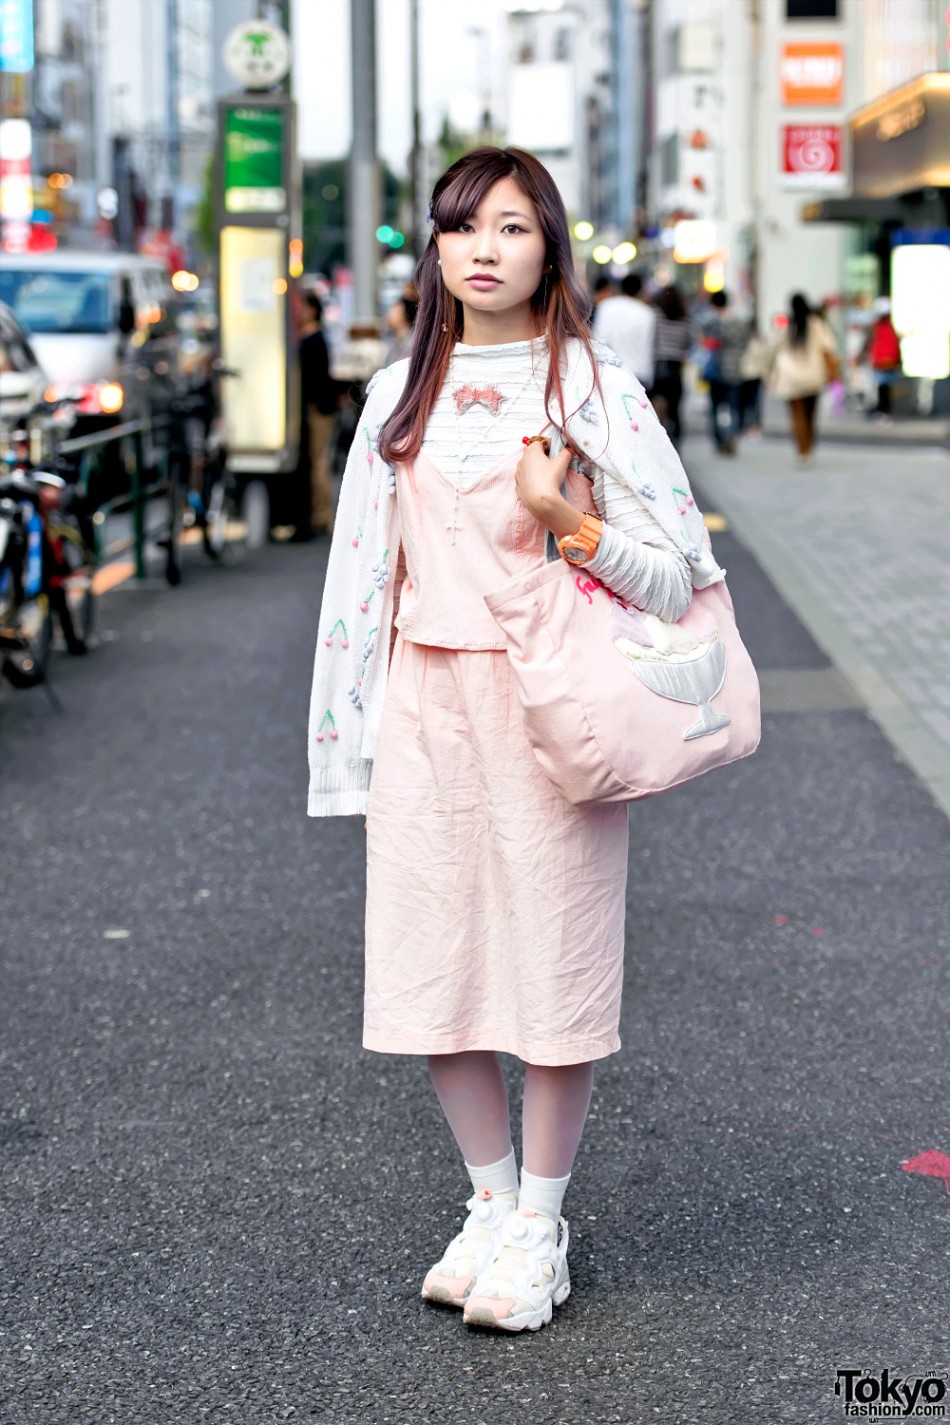 Harajuku Girl in Cute Pink Fashion w/ Ice Cream Bag & Reebok Pump ...